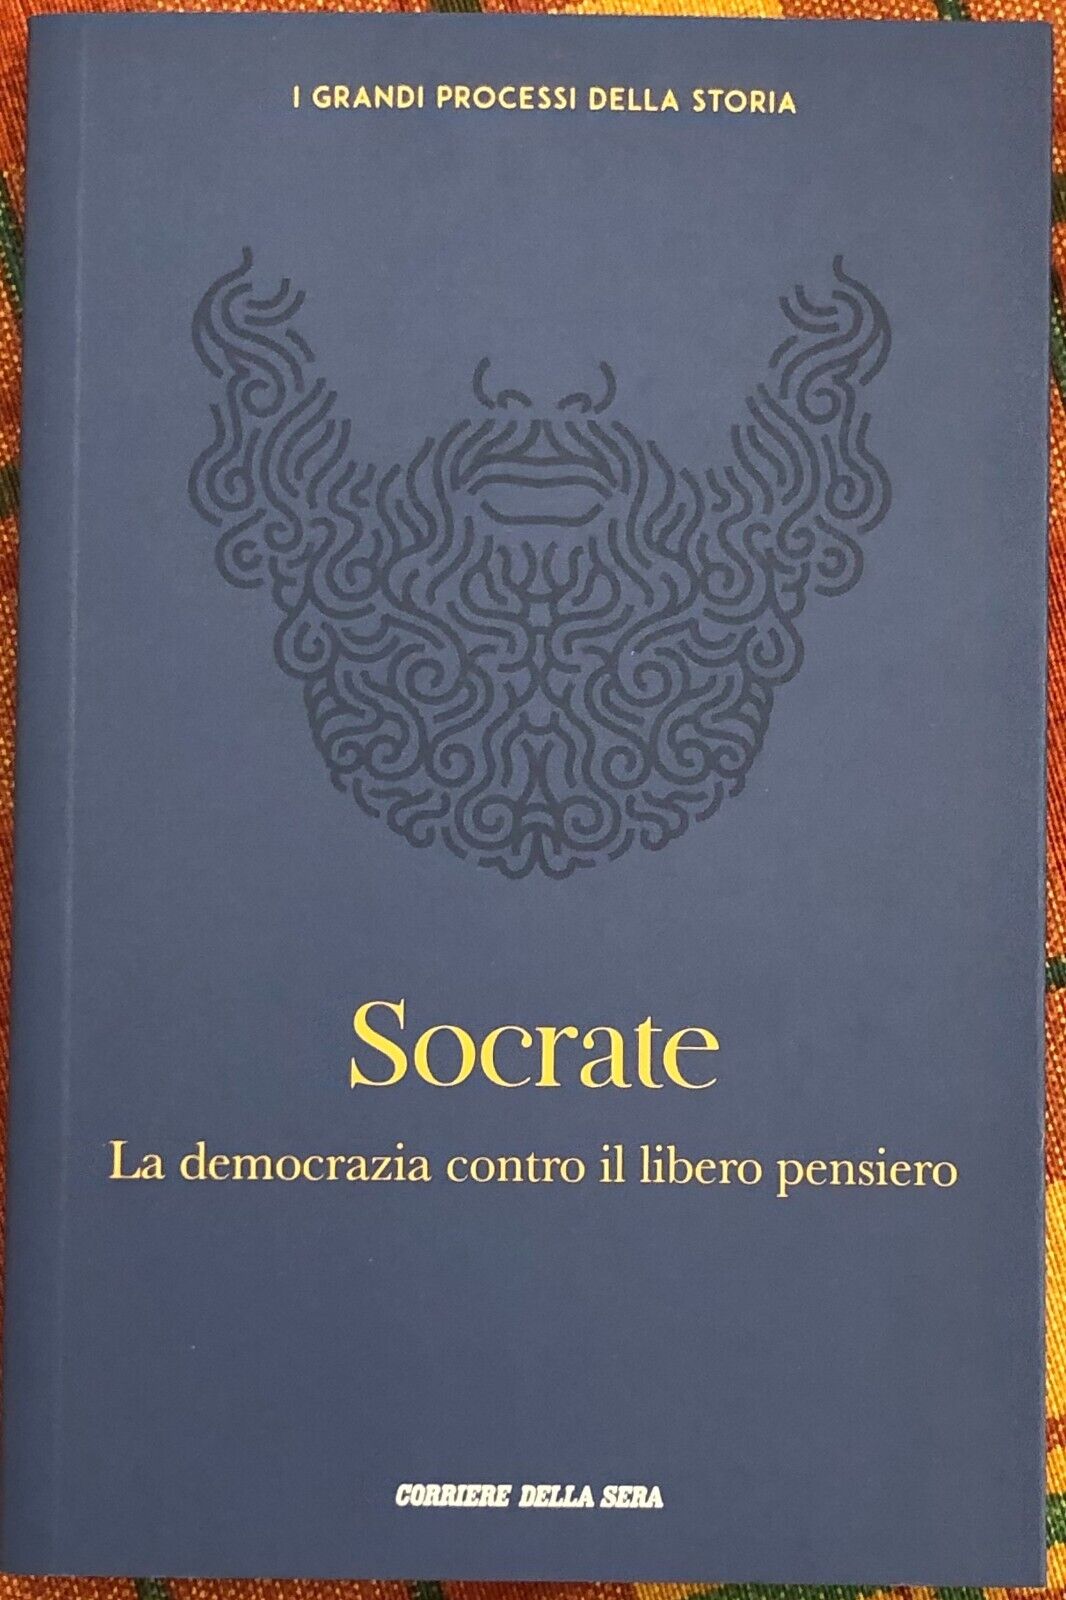 I grandi processi della storia n. 5 - Socrate. La democrazia contro il libero pe